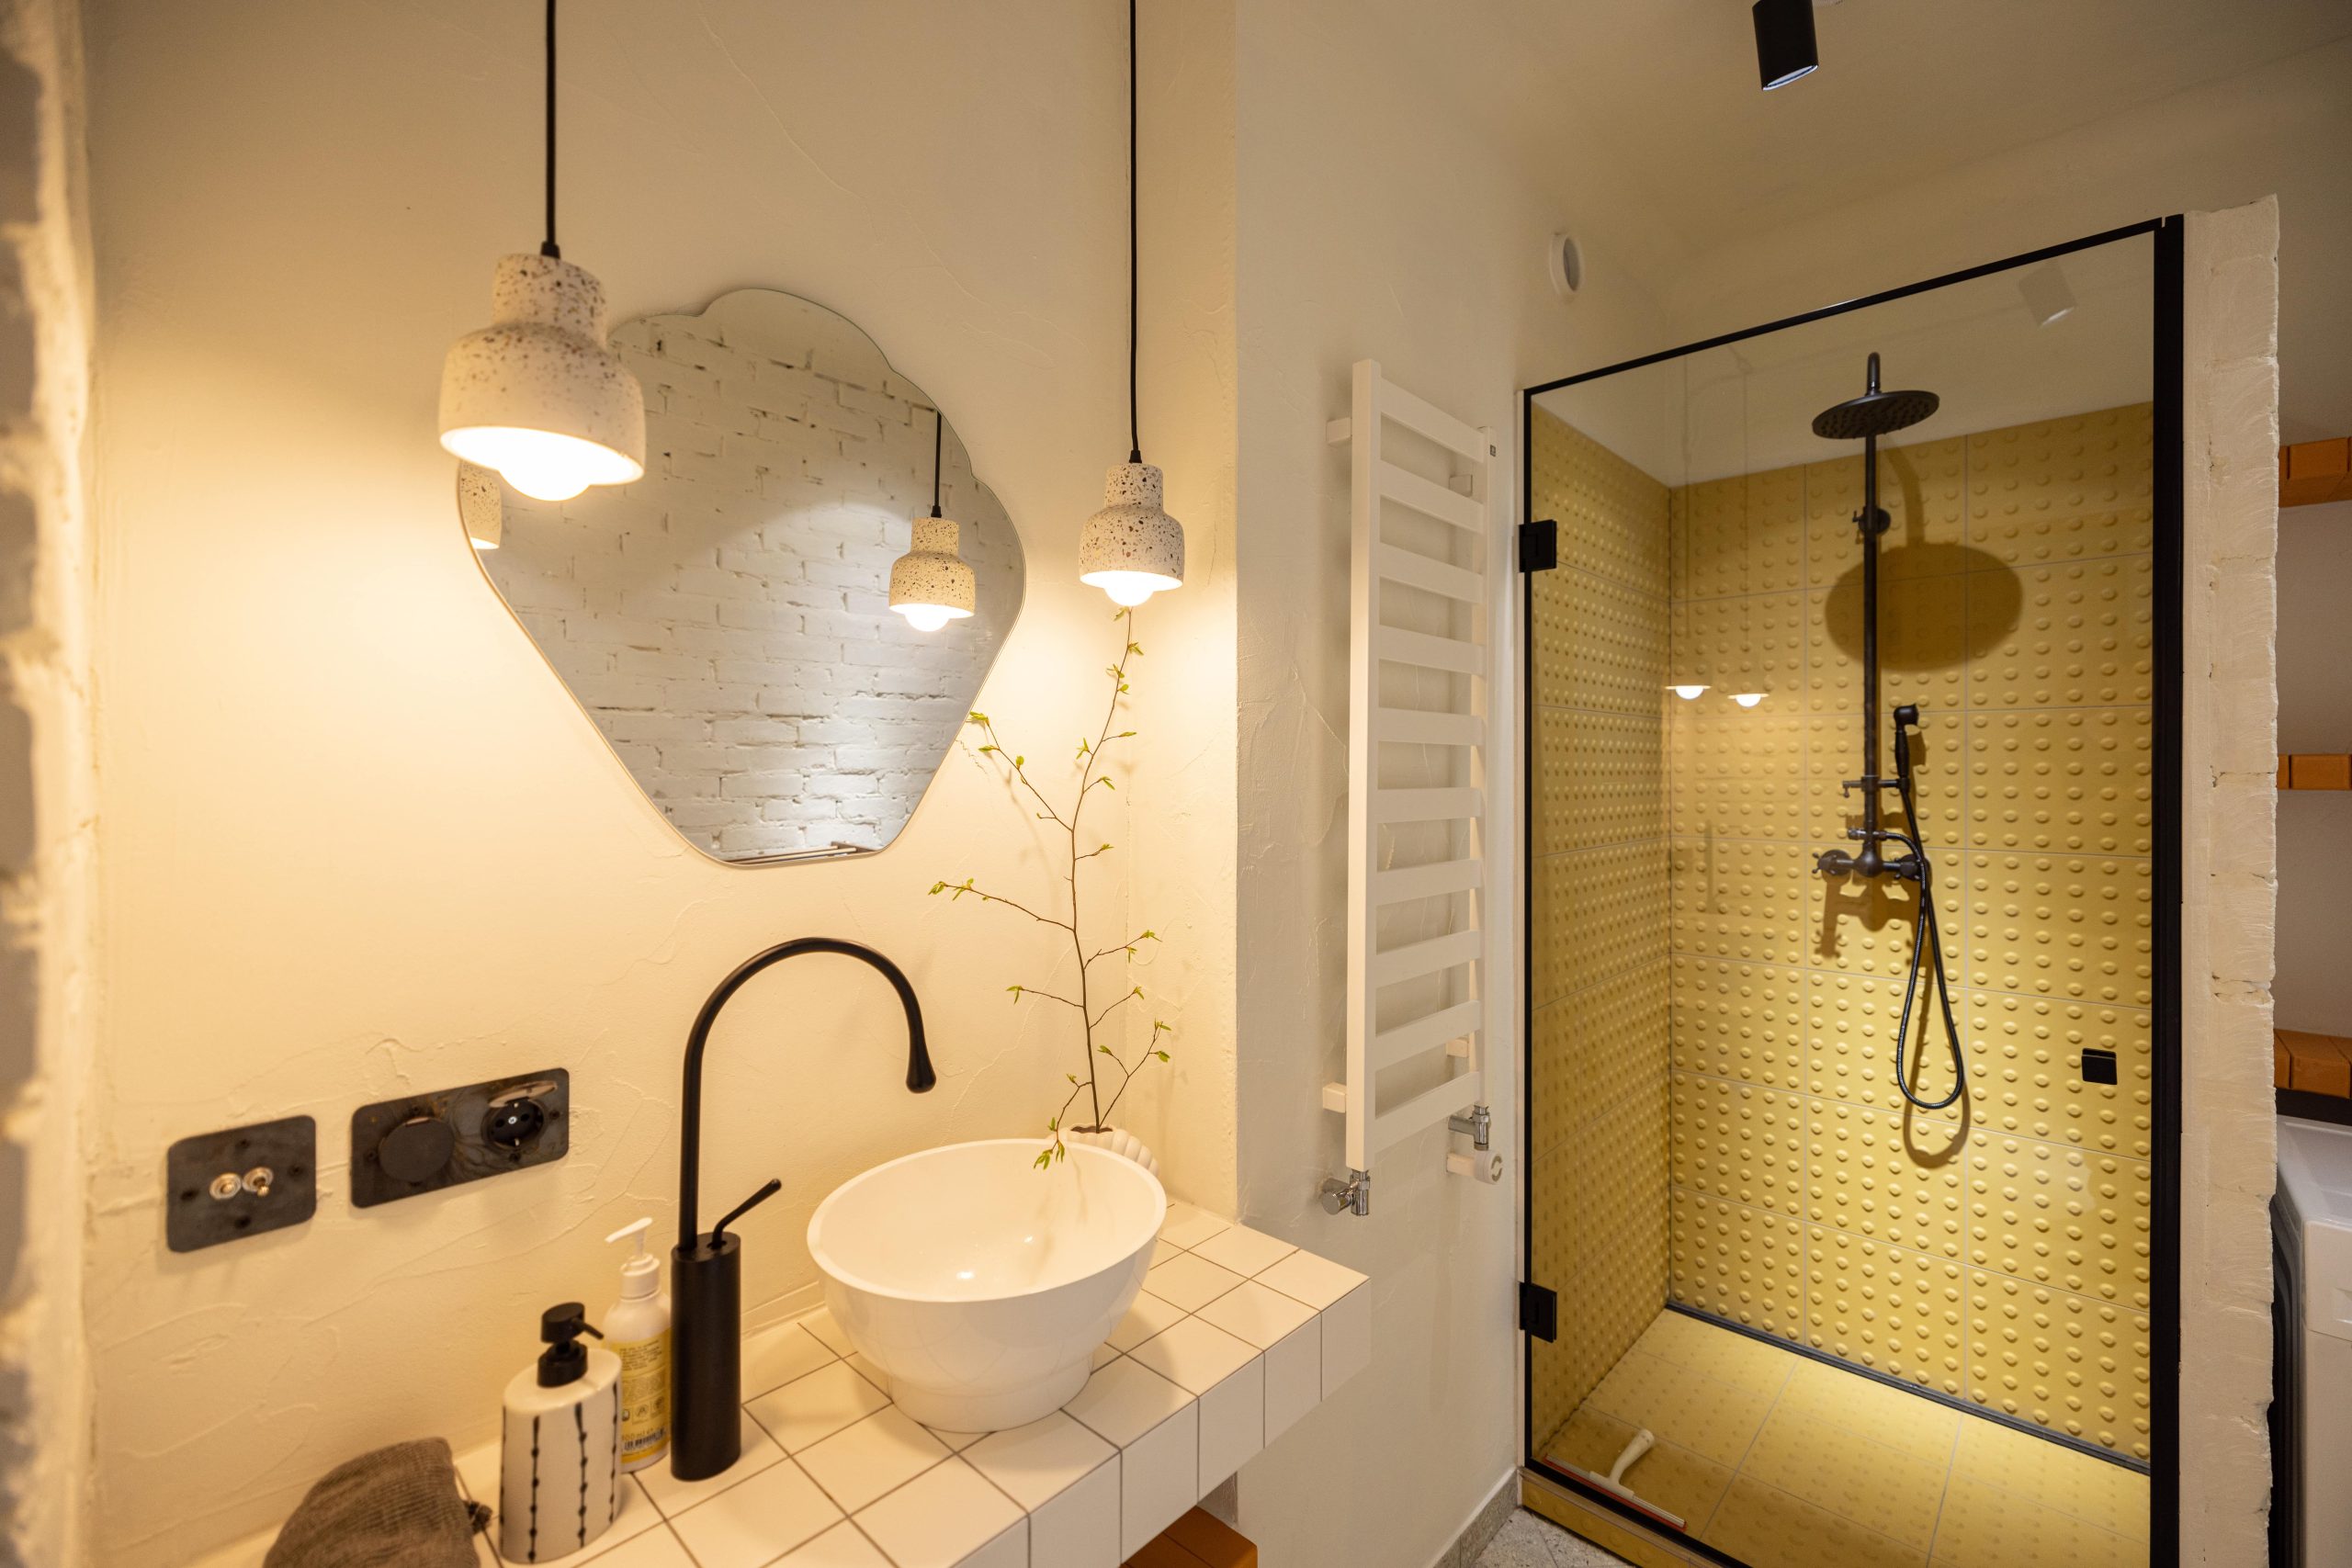 Intérieur élégant d'une salle de bain moderne avec finitions de haute qualité